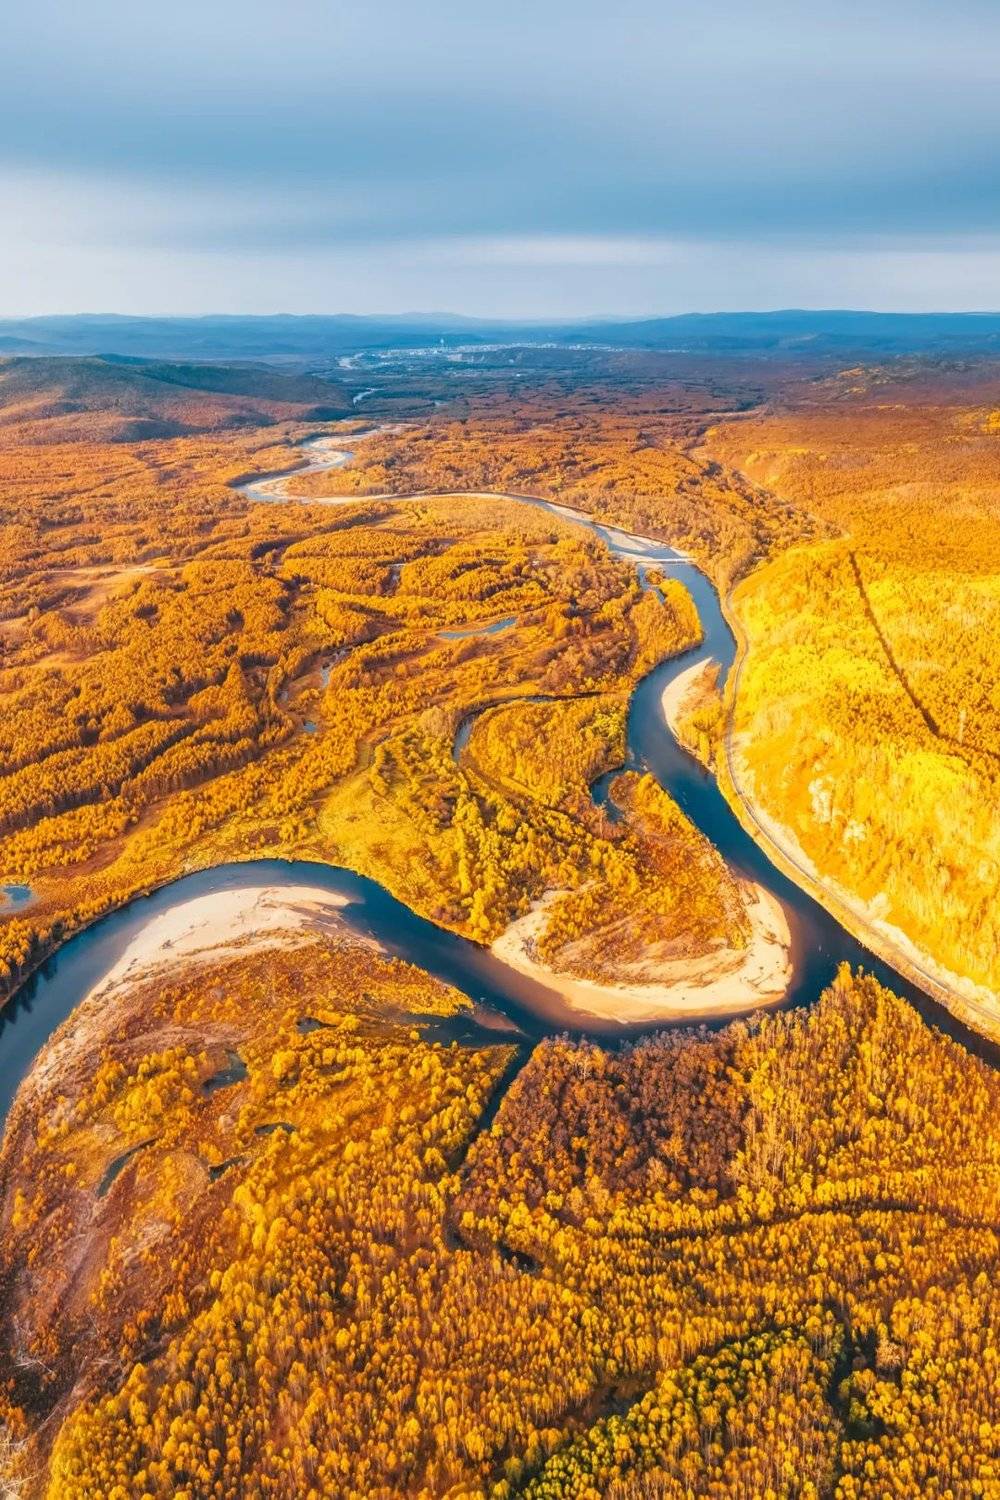 内蒙古呼伦贝尔根河源国家湿地公园秋景。摄影 / 焦潇翔